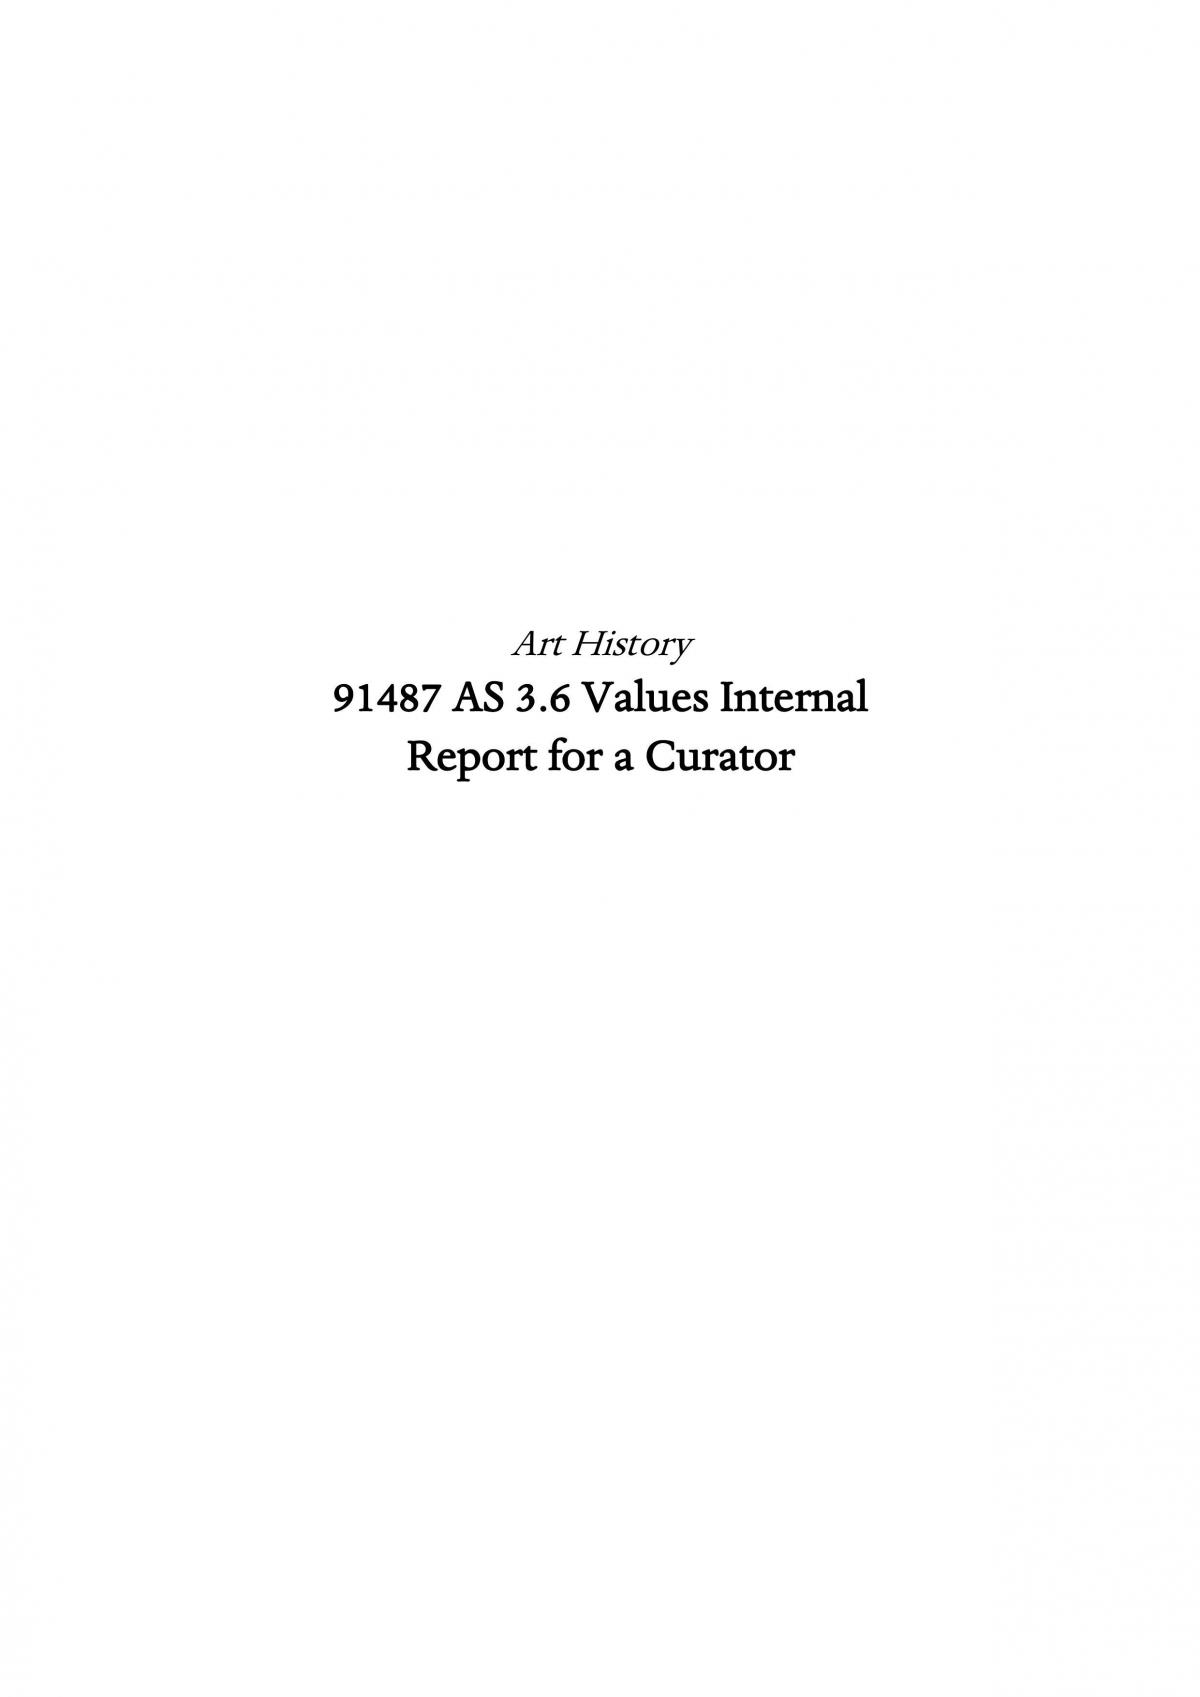 3.6 Values of Art Report - Renaissance - Page 1